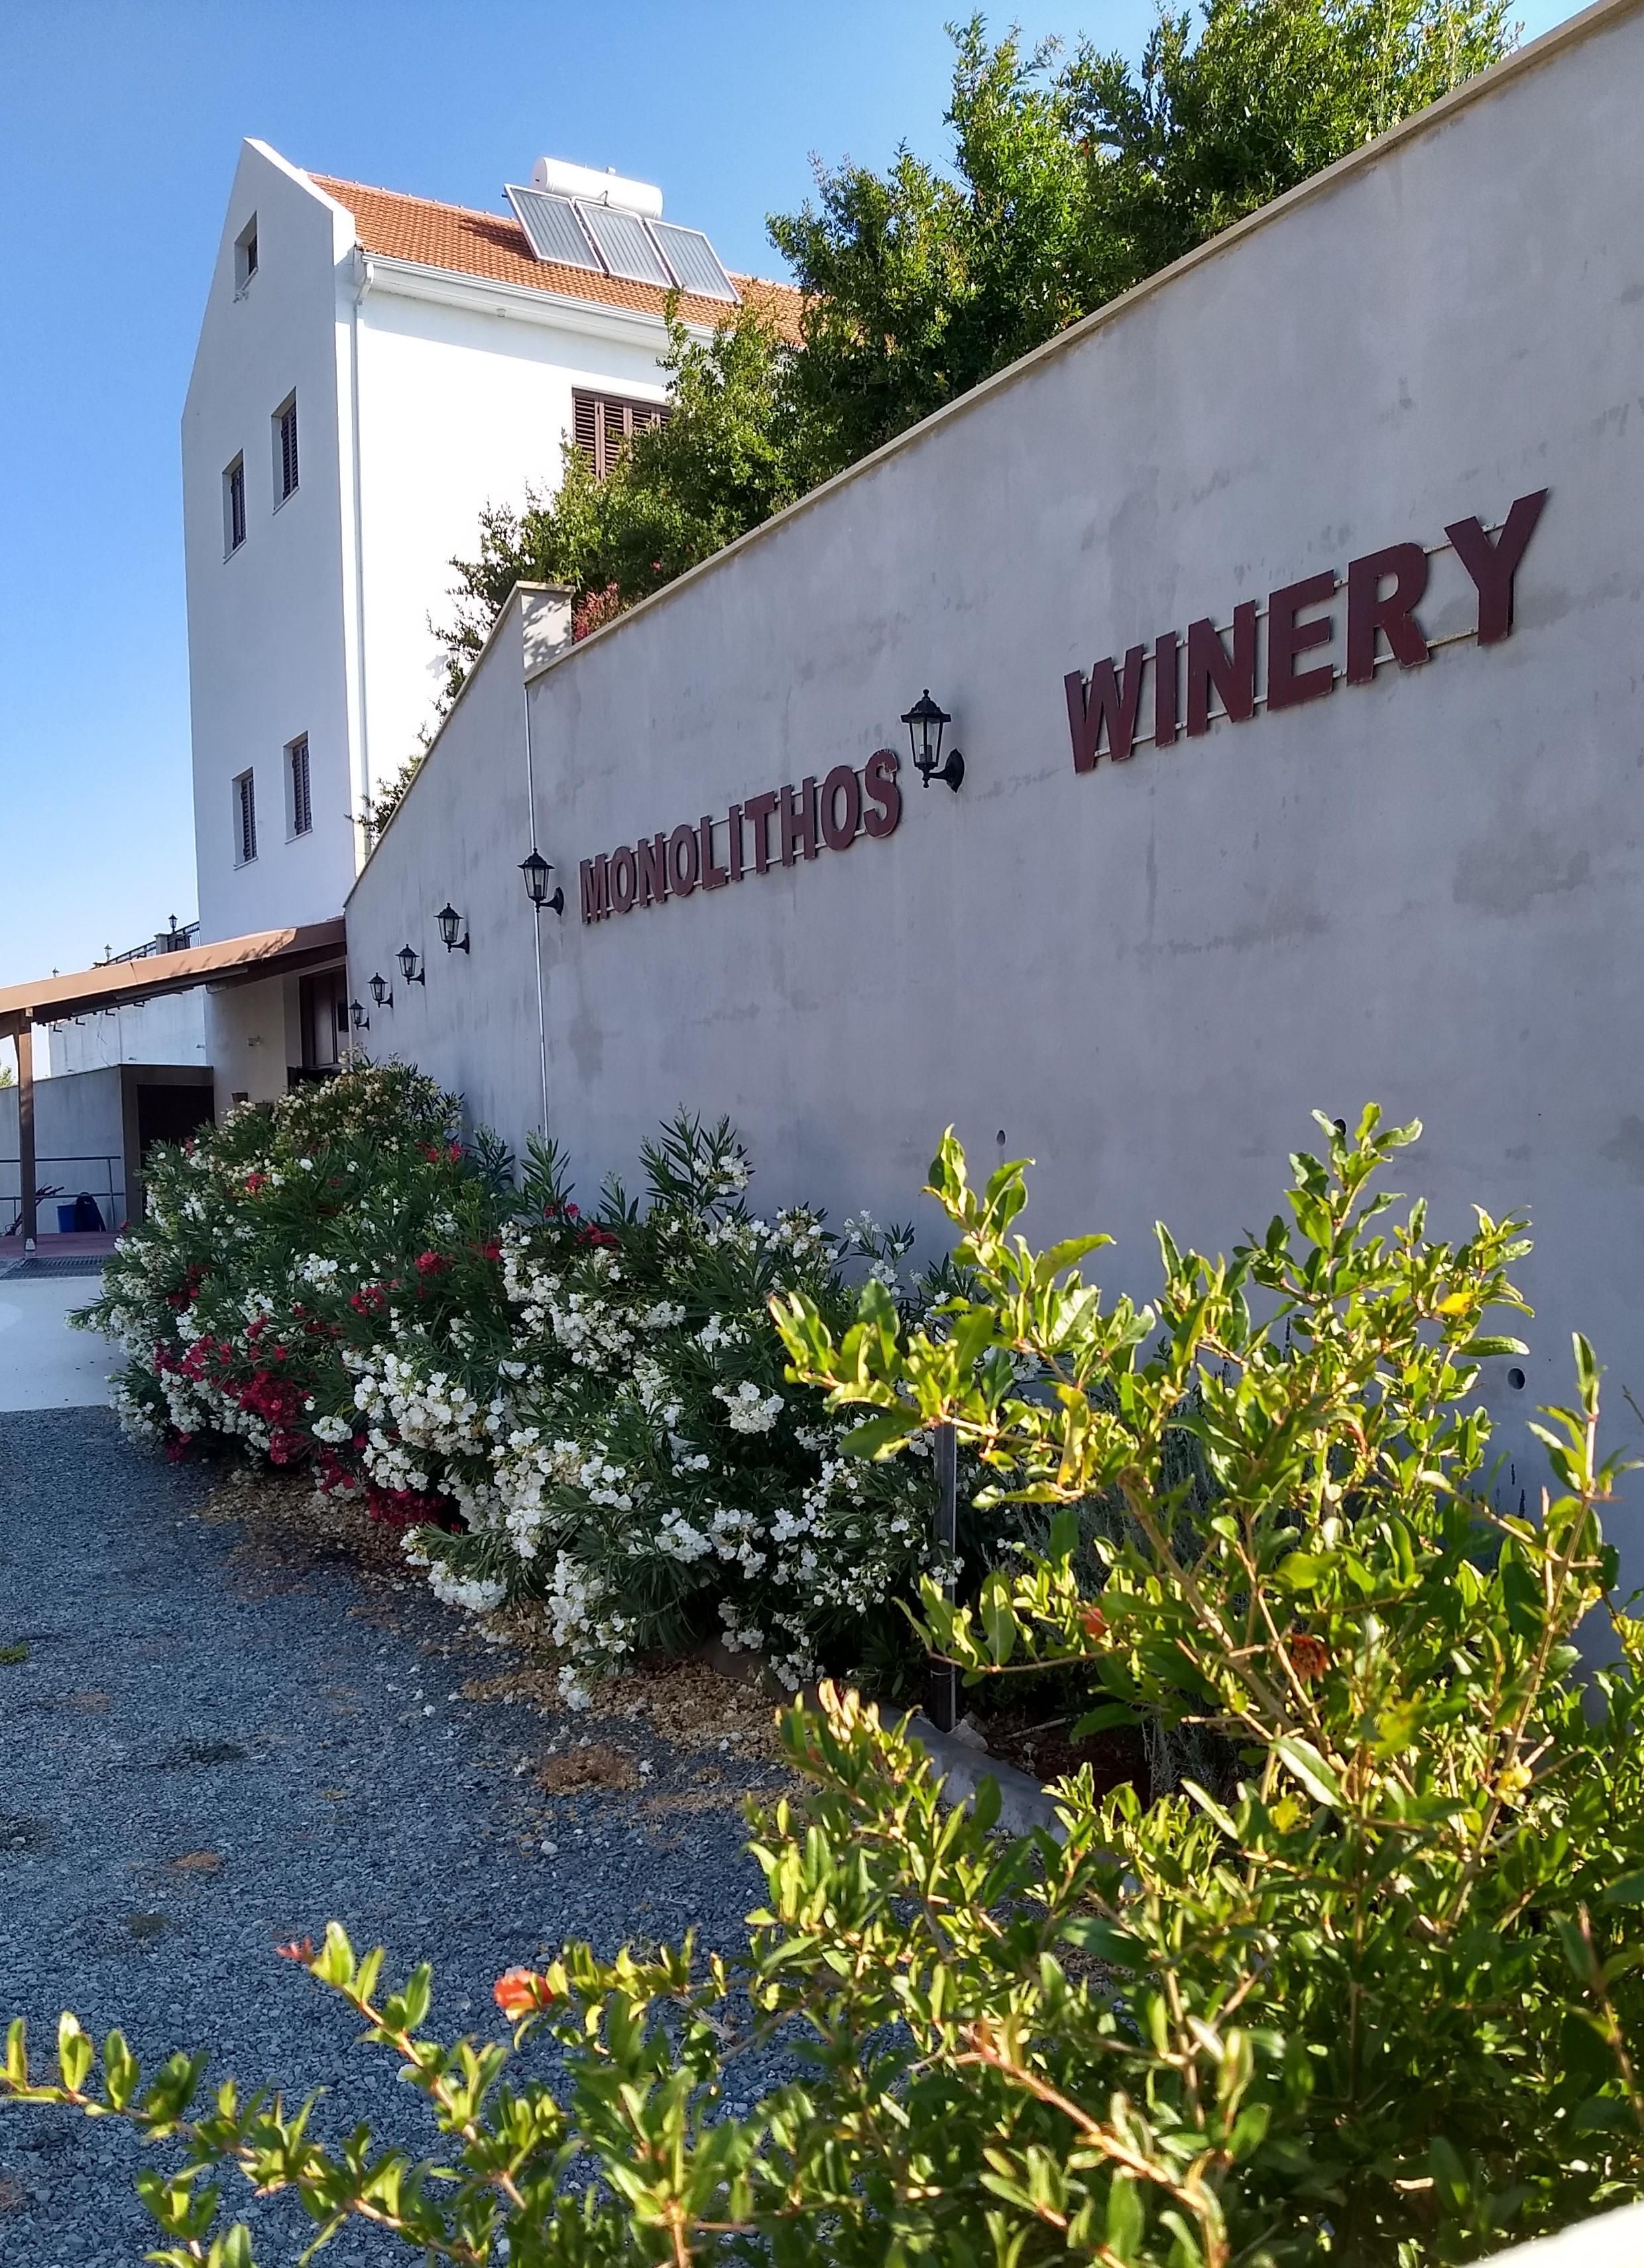 Winery "Monolithos"